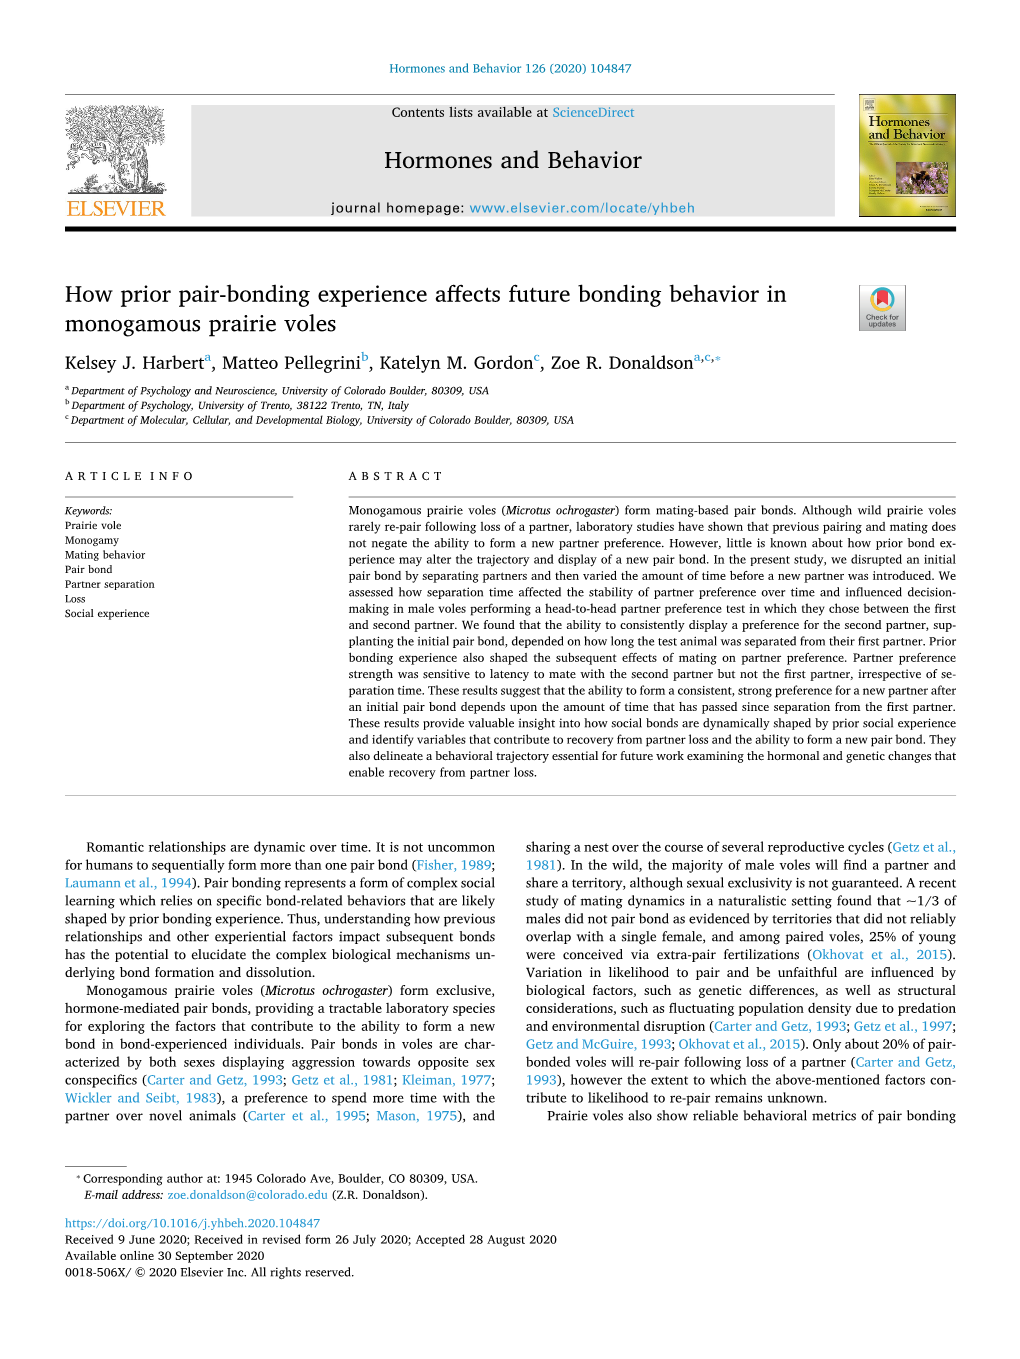 How Prior Pair-Bonding Experience Affects Future Bonding Behavior in Monogamous Prairie Voles